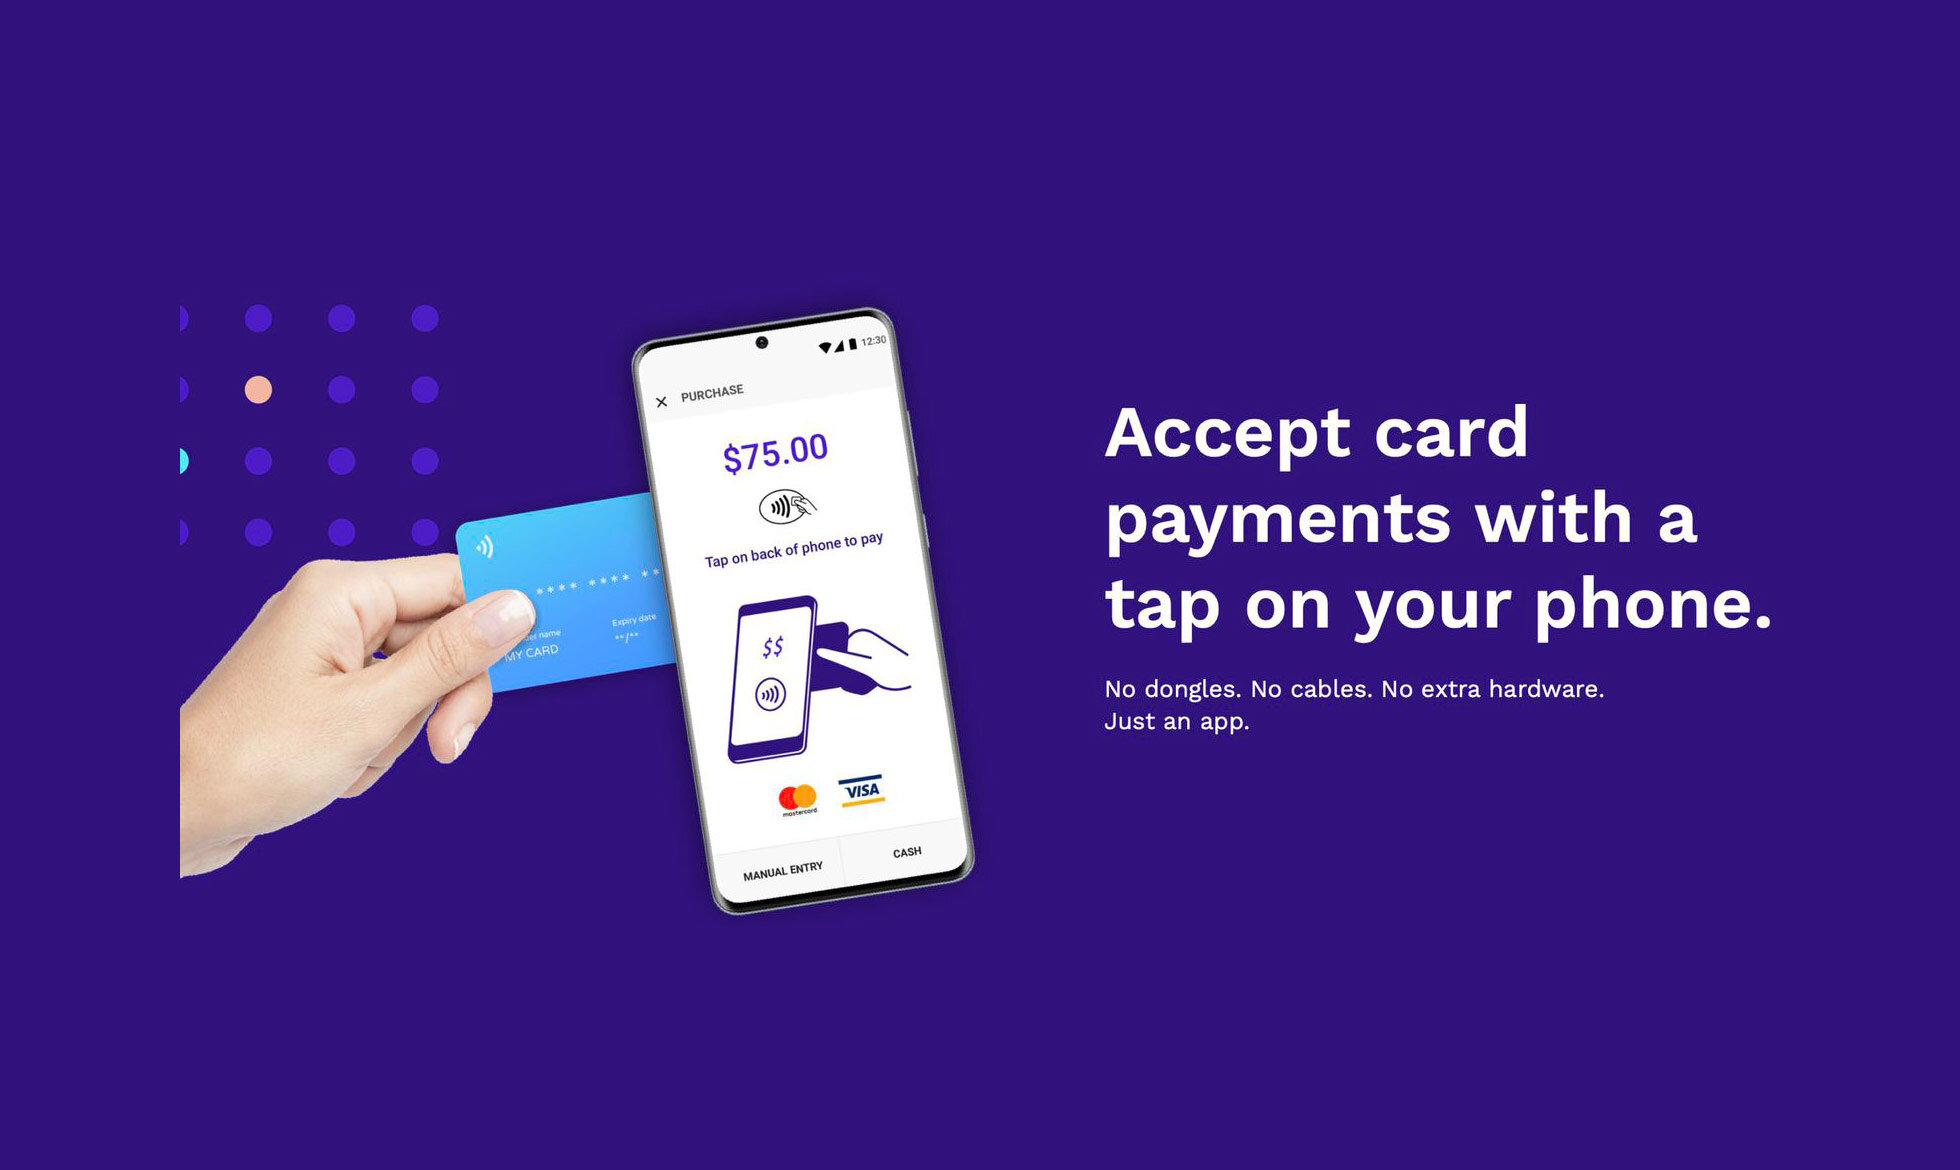 Οι συσκευές iPhone θα δέχονται σύντομα πληρωμές πιστωτικών καρτών μέσω NFC